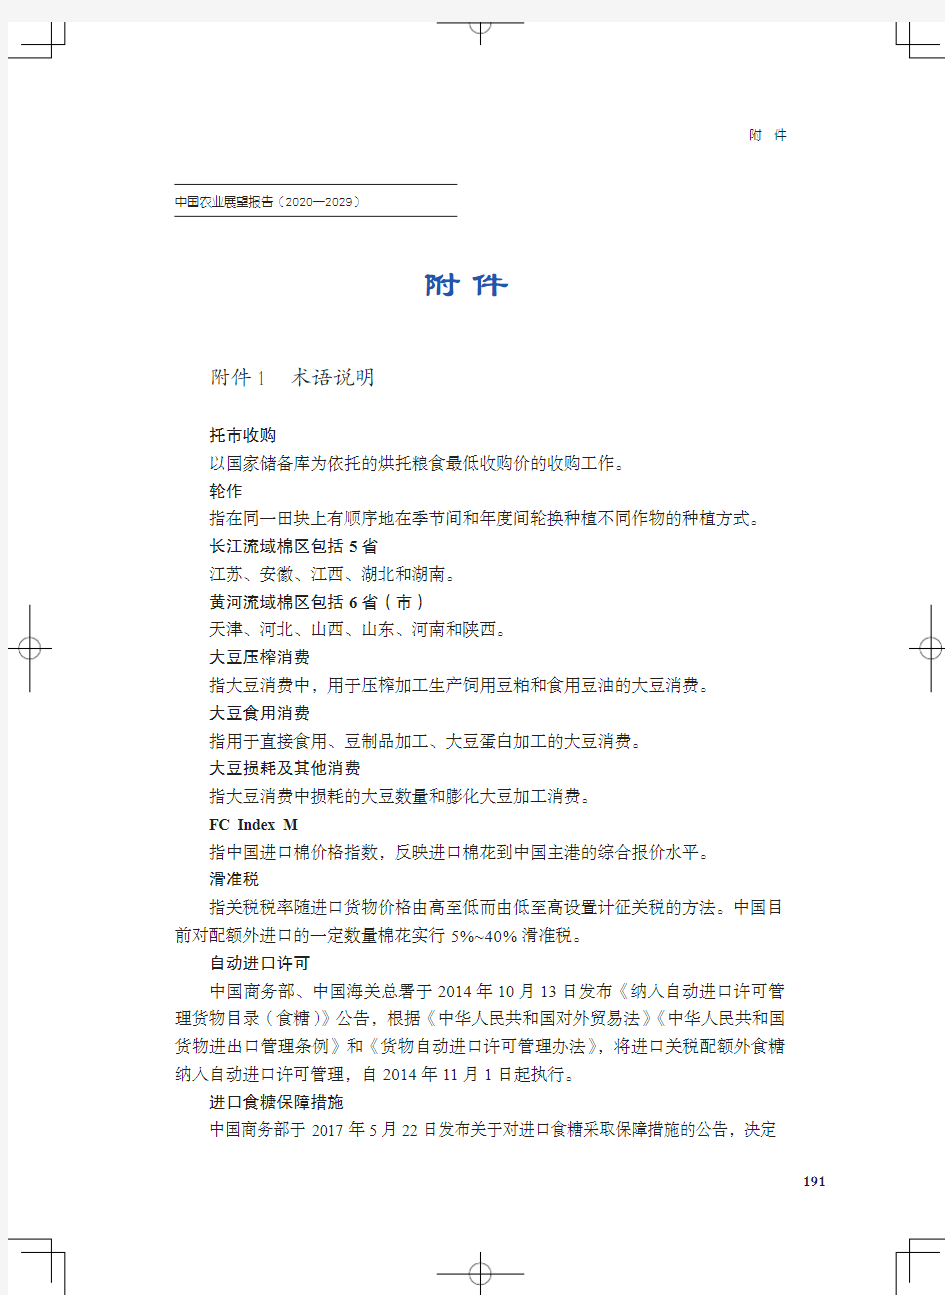 中国农业展望报告(2020—2029)-附件